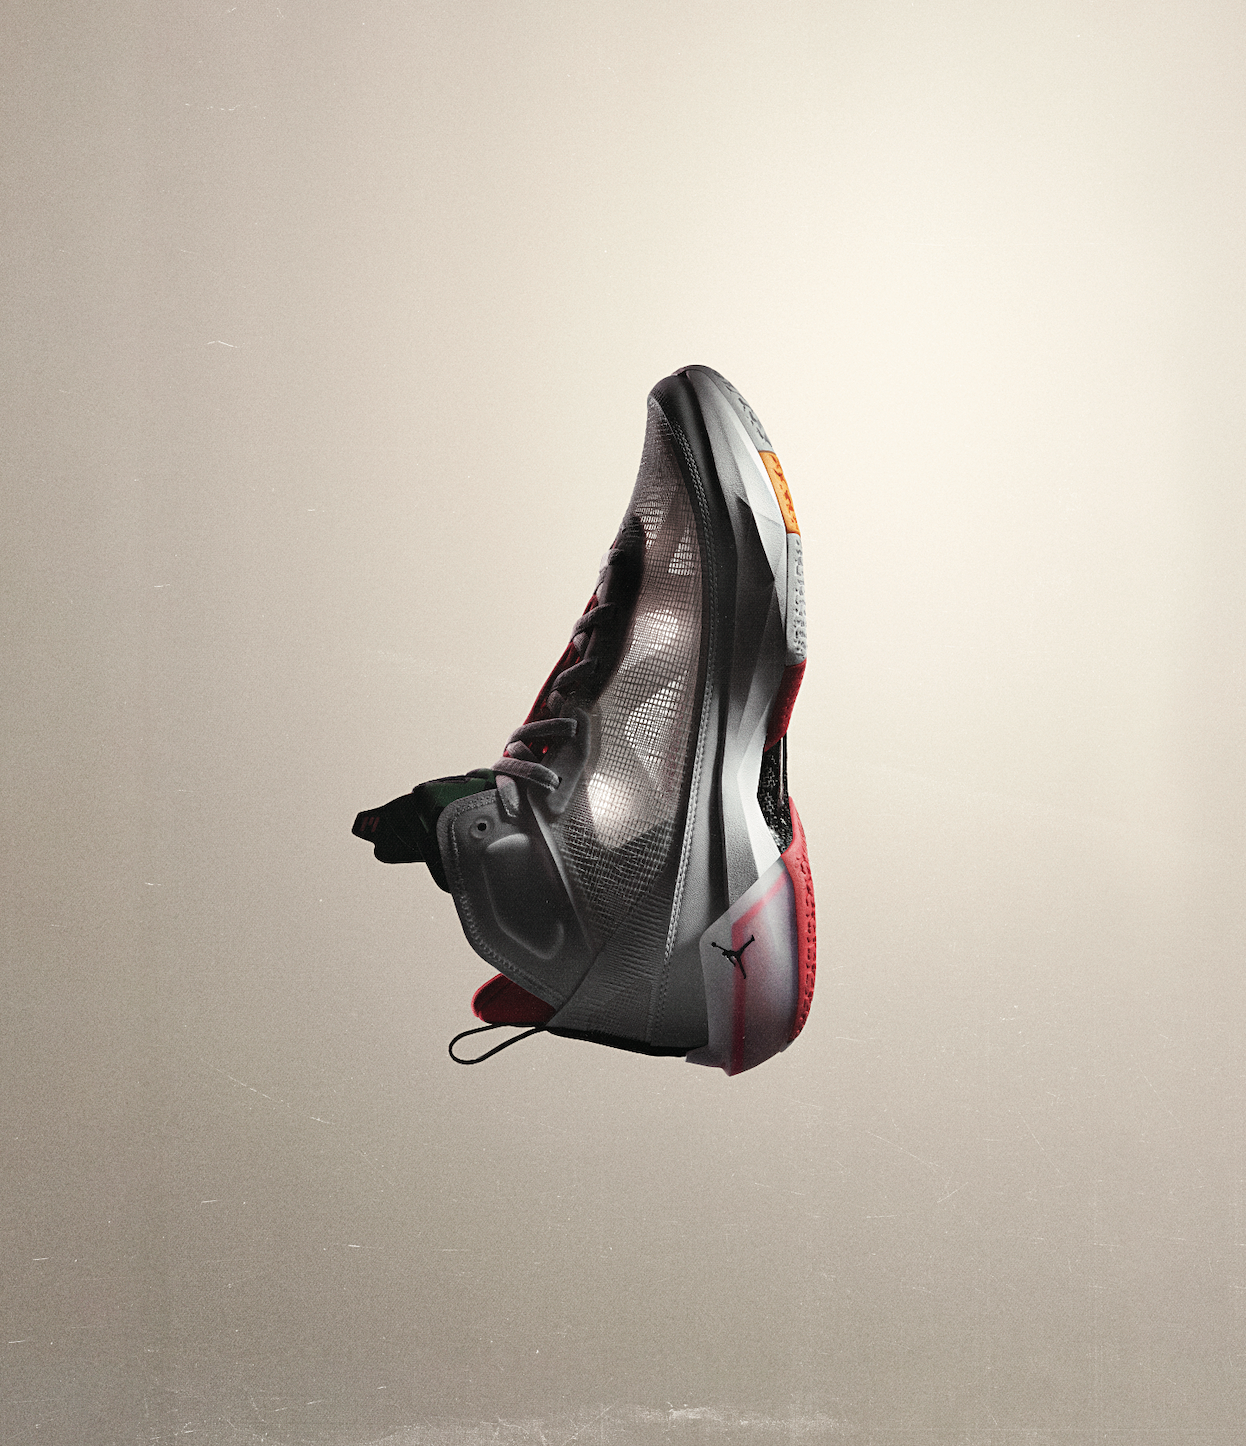 Light Show: An Exclusive Look at the Air Jordan 37